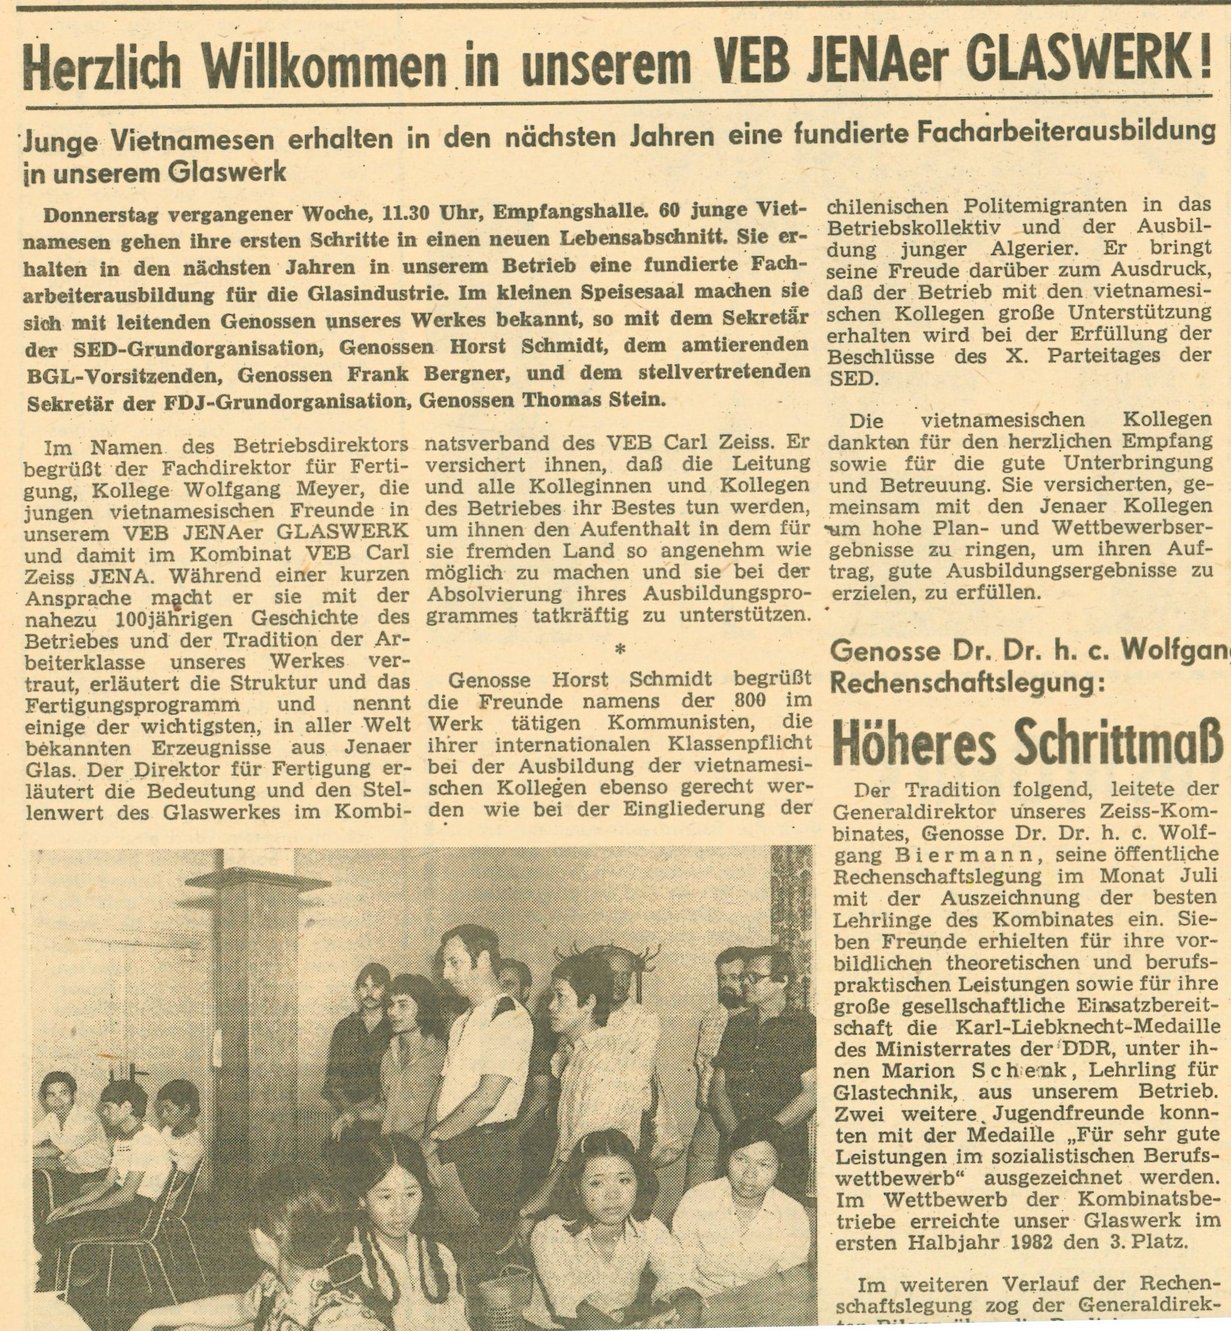 Der Glasmacher, Betriebszeitung der Jenaer Glaswerk GmbH, 21. Juli 1982, SCHOTT Archiv